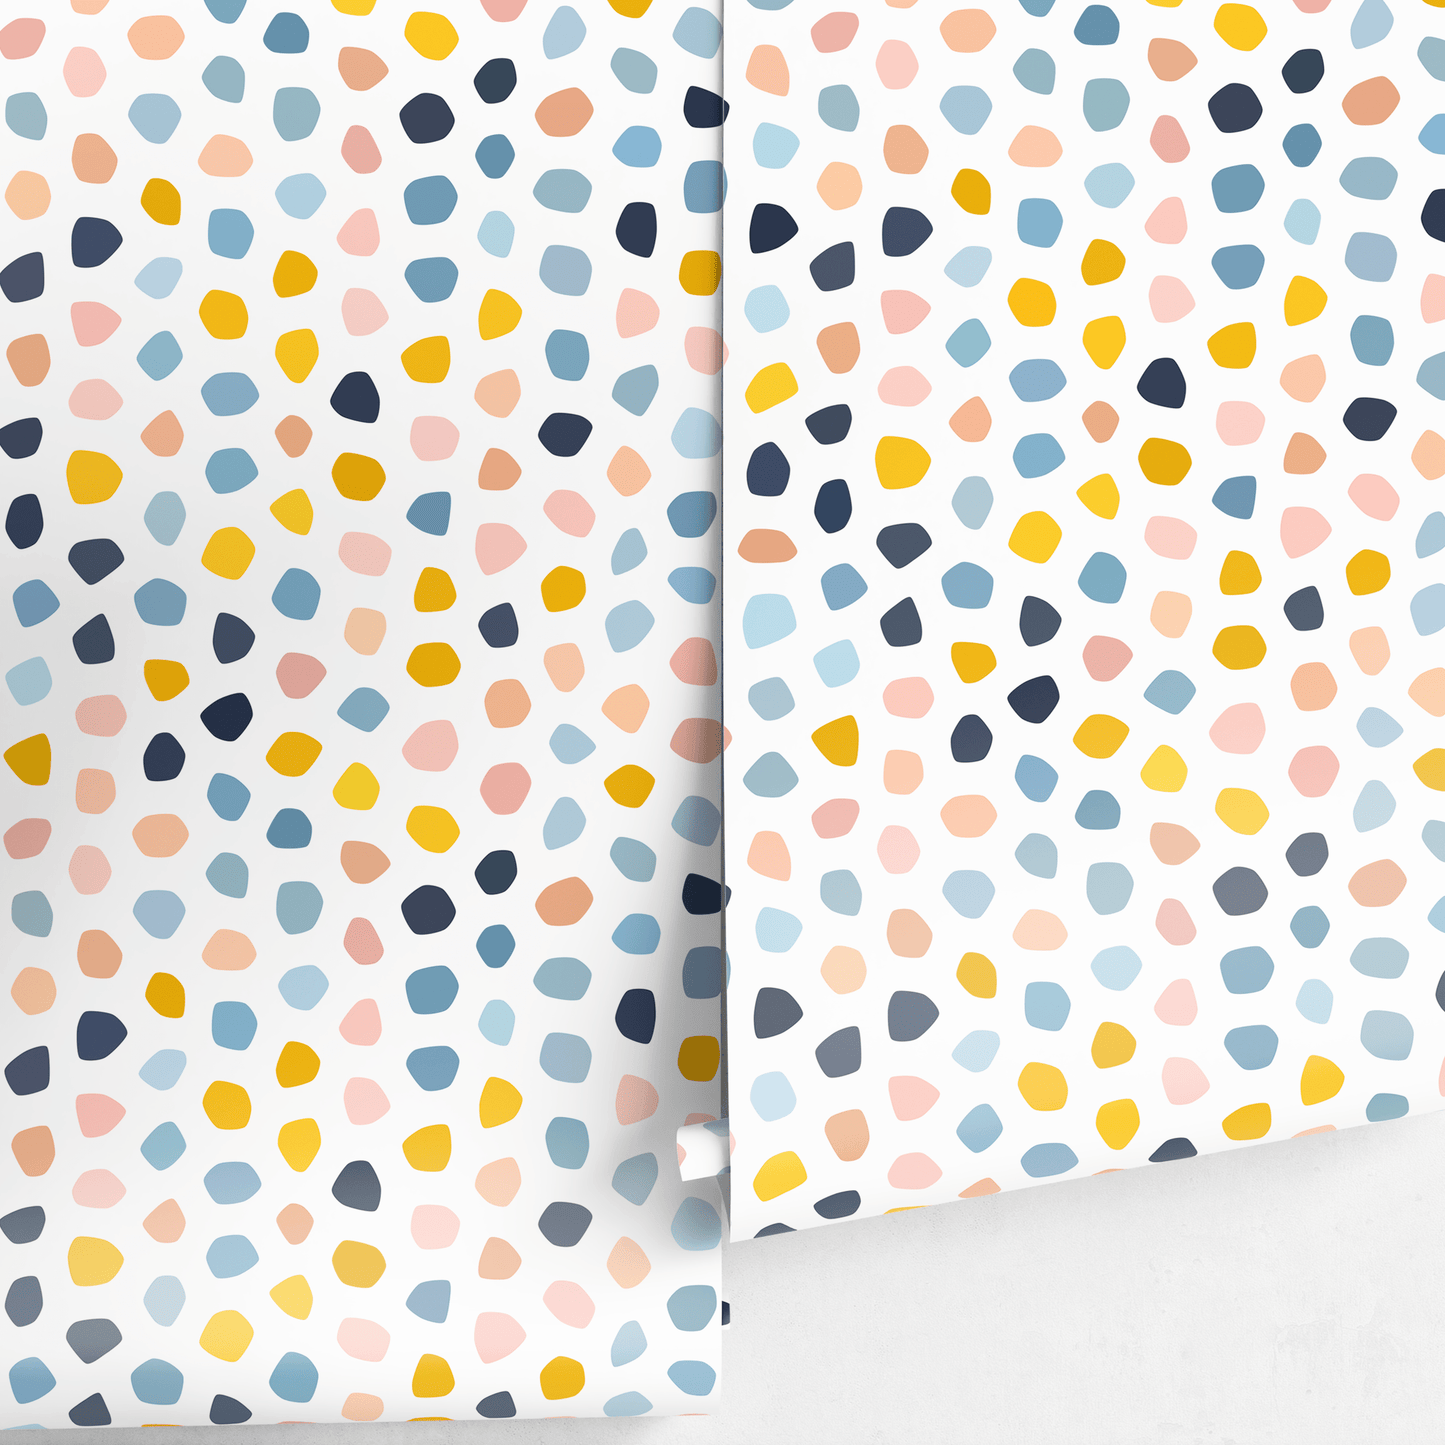 Removable Wallpaper Scandinavian Wallpaper  Wallpaper Peel and Stick Wallpaper Wall Paper Colorful Dots - A856